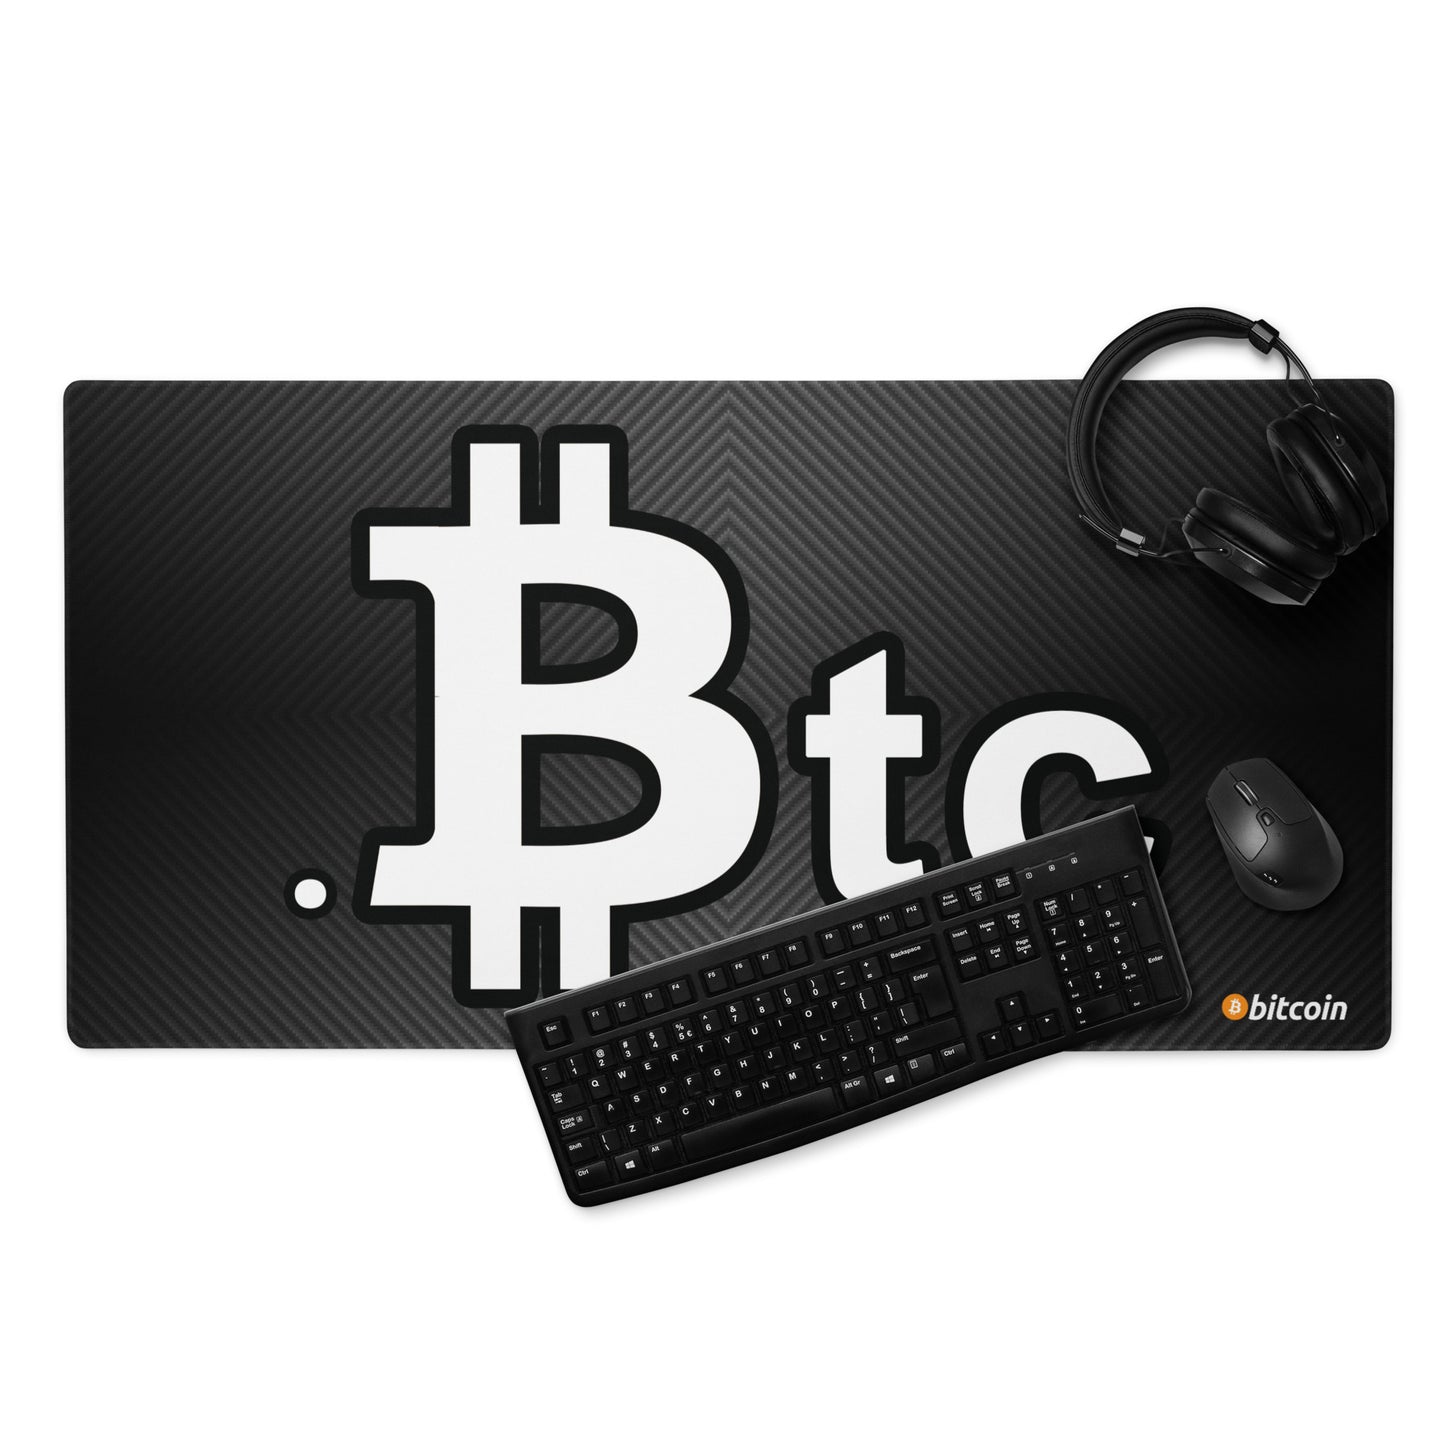 Bitcoin Btc Gaming Mouse Pad